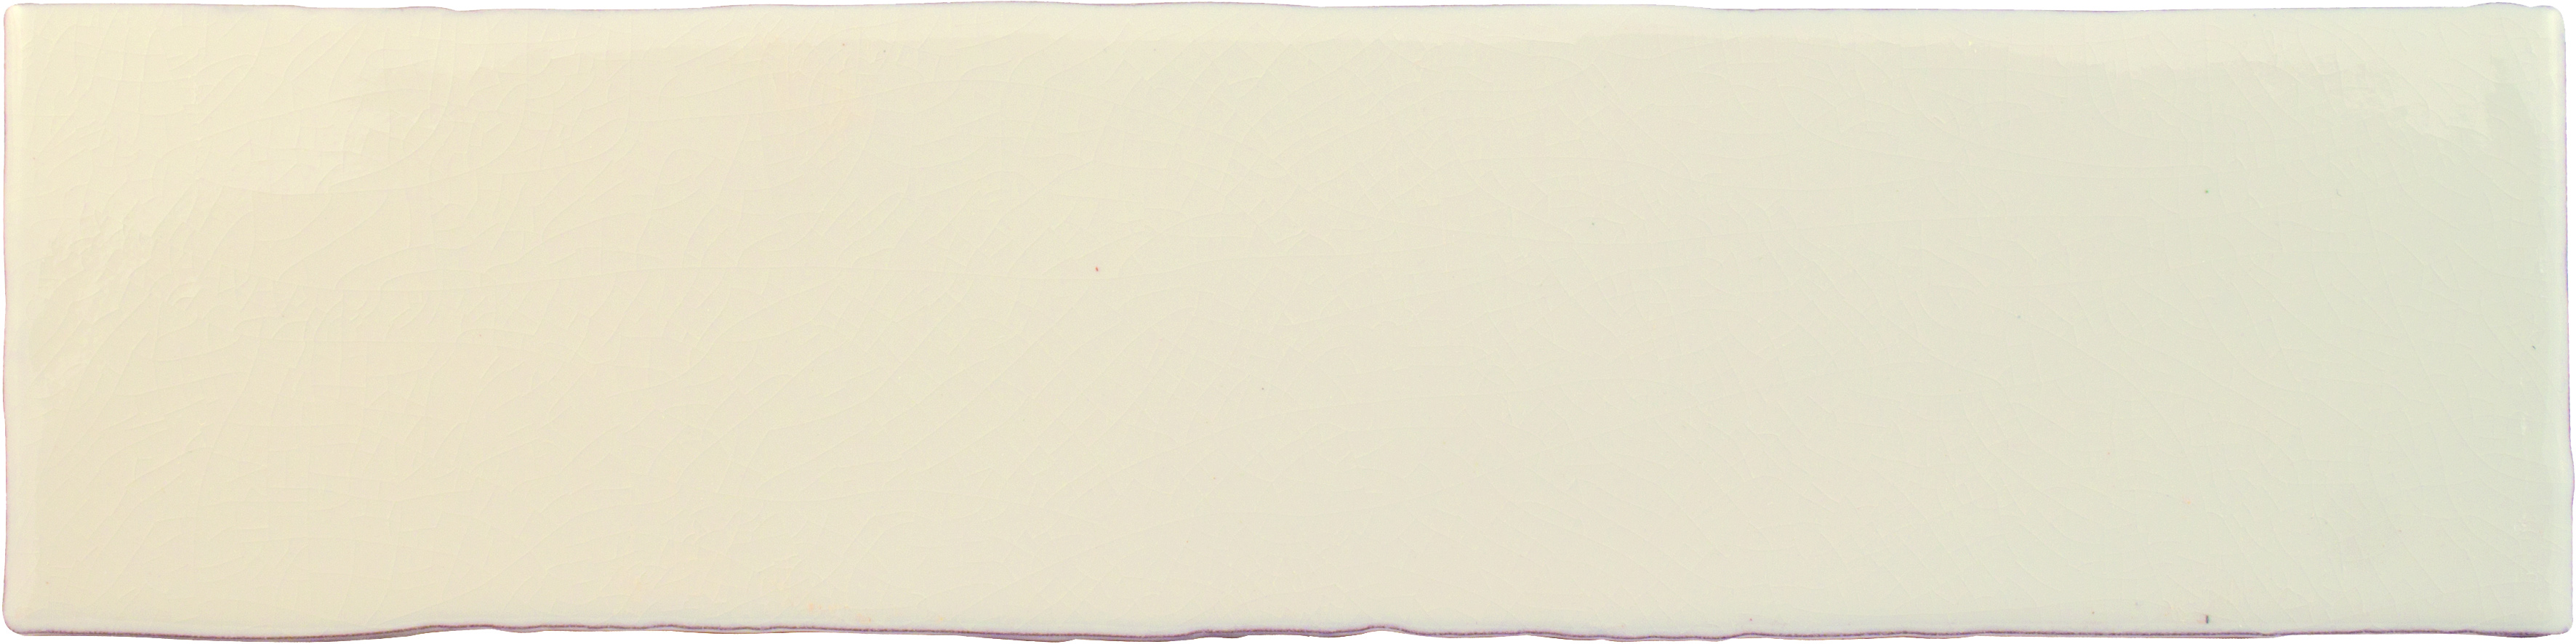 Wandfliese 7,5x30  creme glänzend
Cevica  Alaska  Medium White ( Craquele ) 
Art: A53844